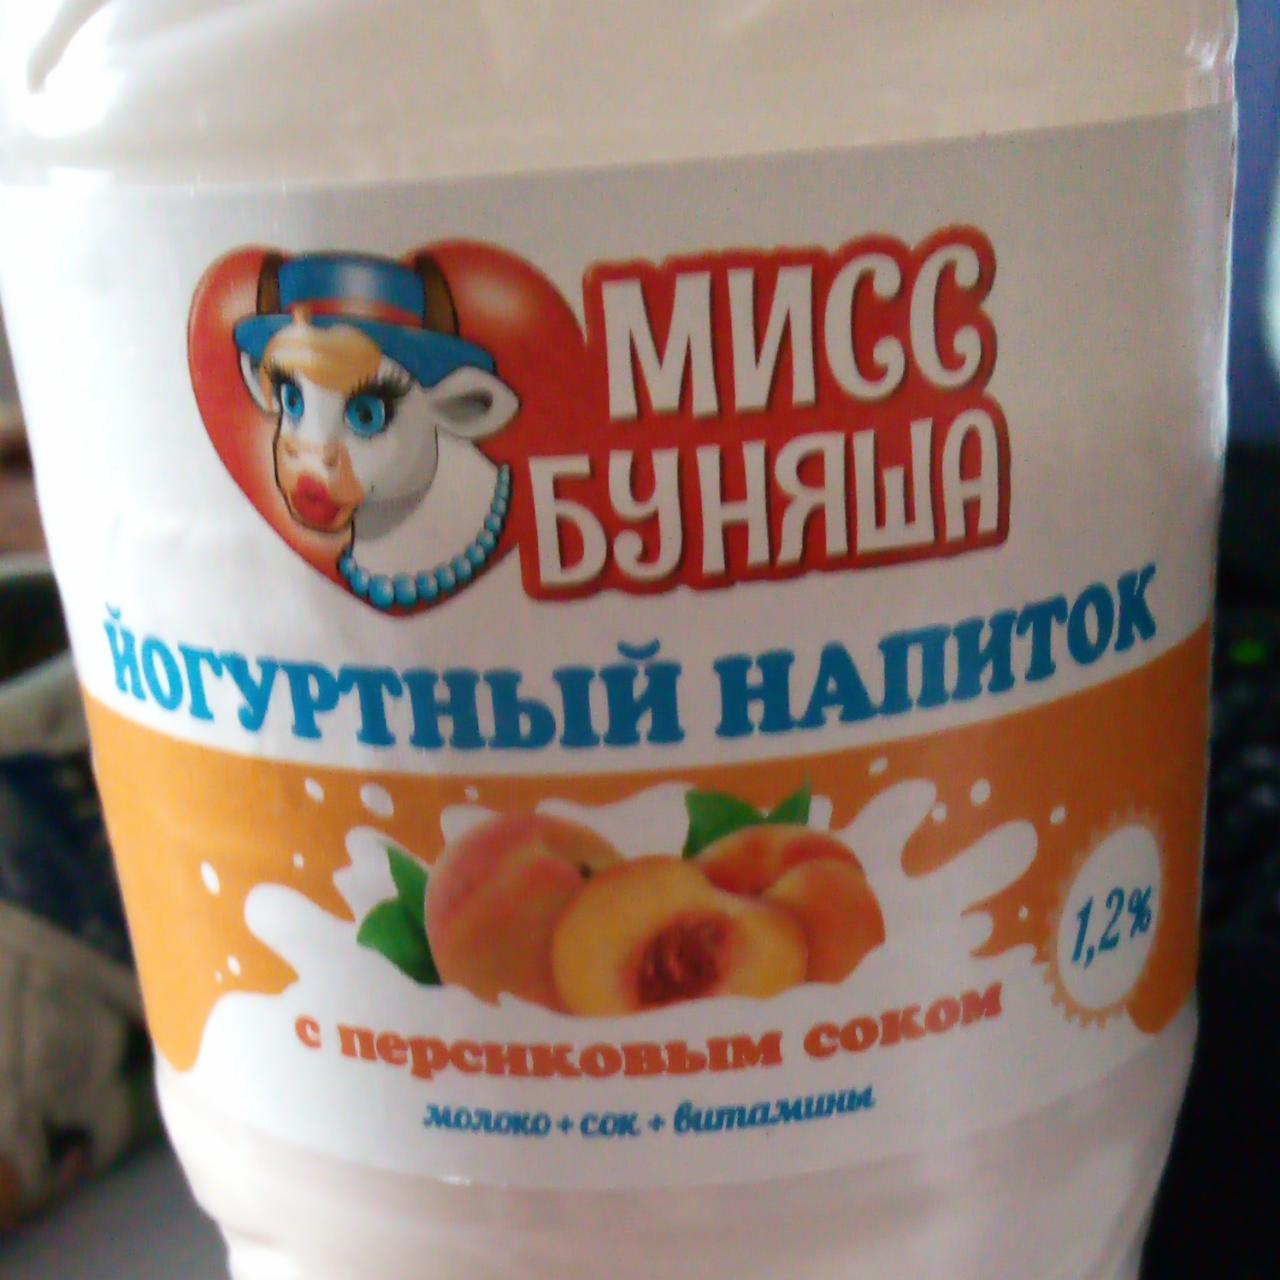 Фото - Йогуртный напиток с персиковым соком Мисс Буняша